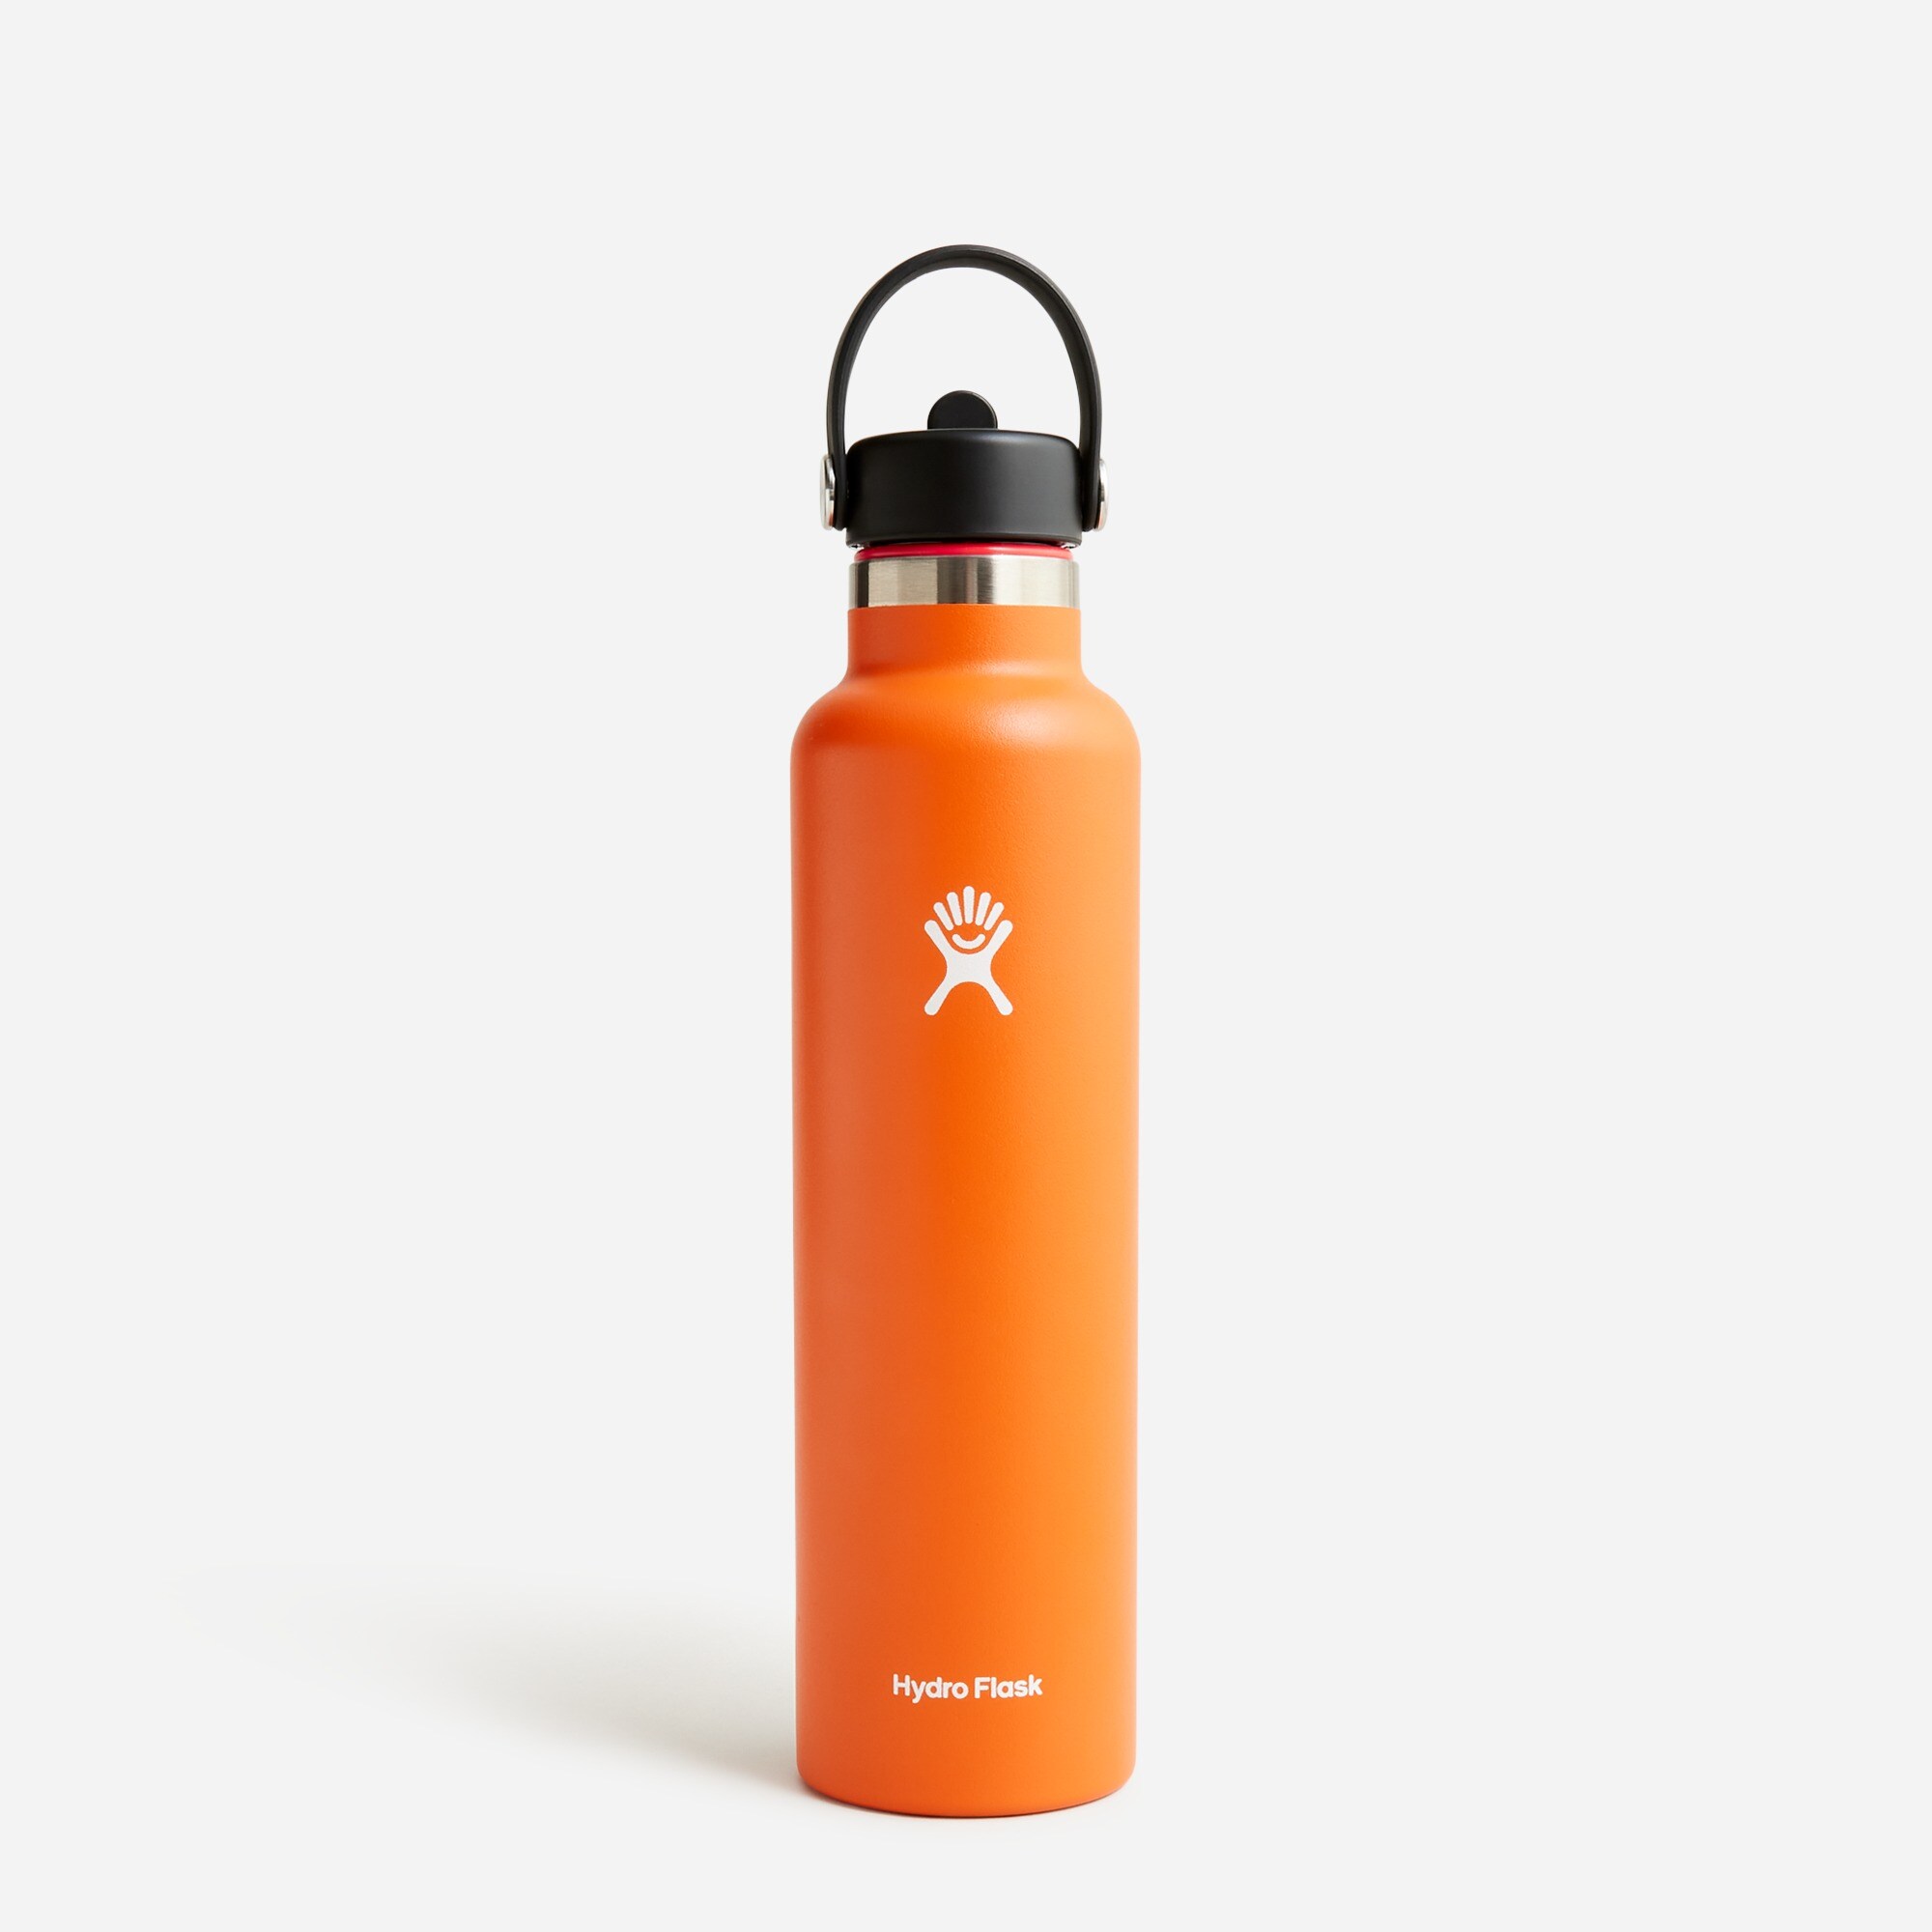  Hydro Flask&reg; 21-ounce standard-mouth bottle